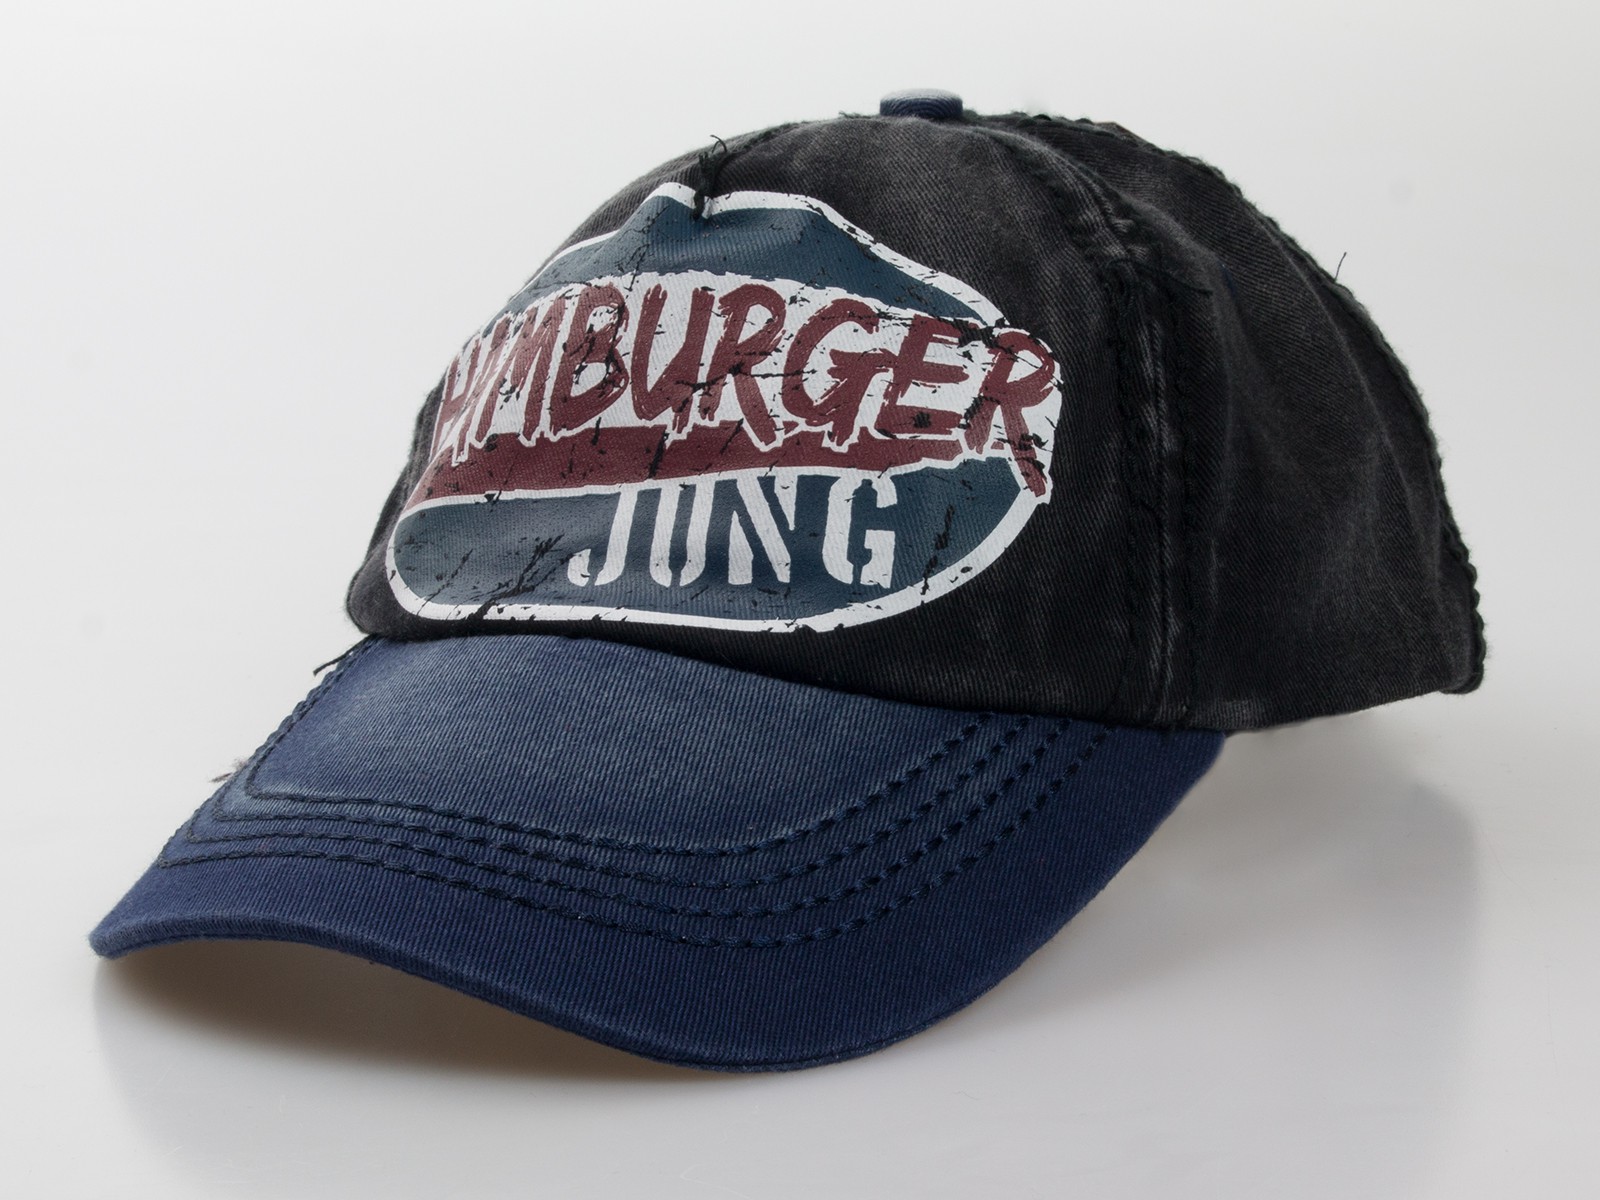 Baseball-Cap "Hamburger Jung"